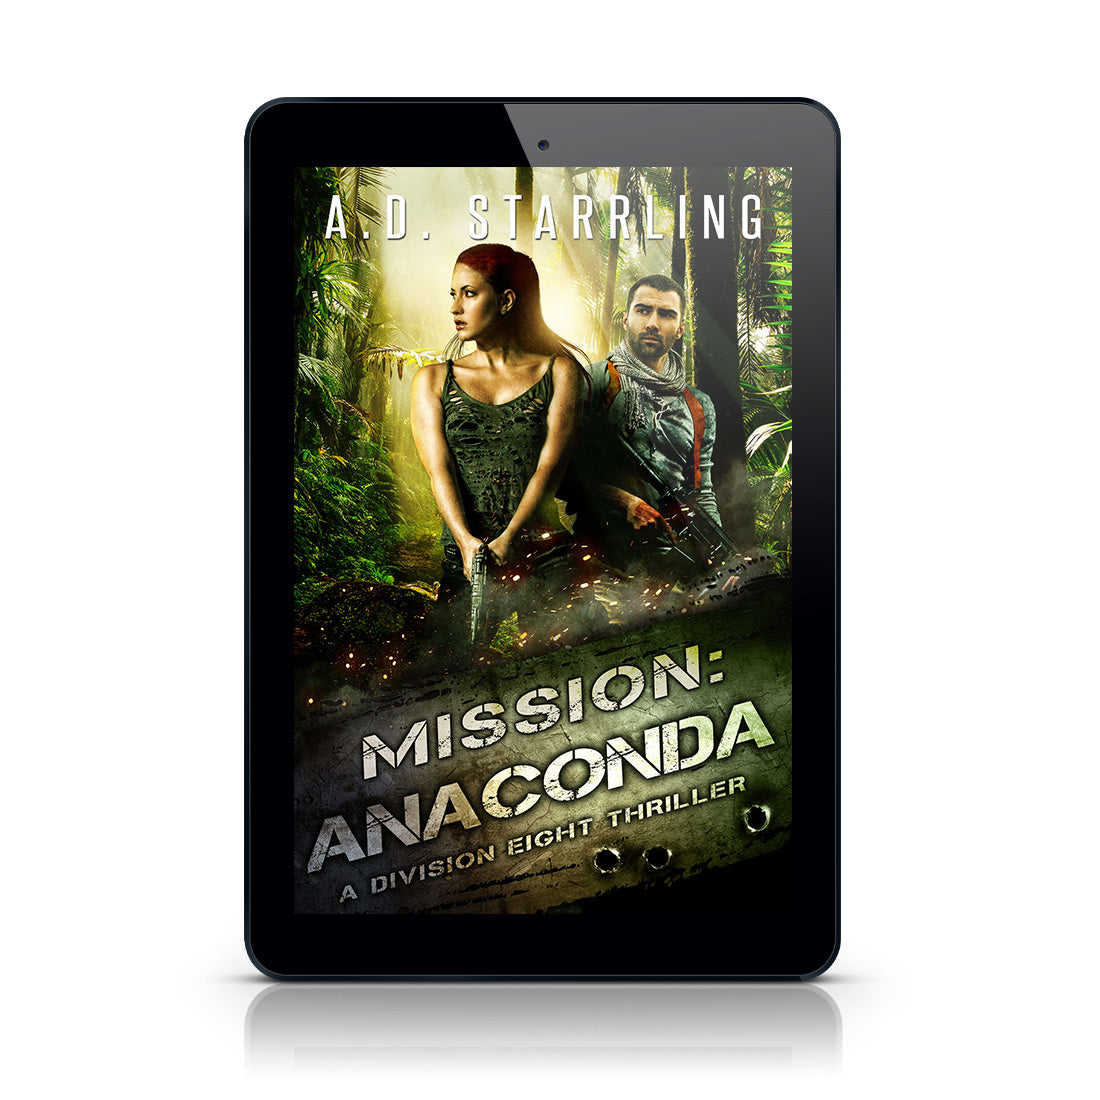 Mission:Anaconda (Division Eight #3) EBOOK military romantic suspense action adventure author ad starrling